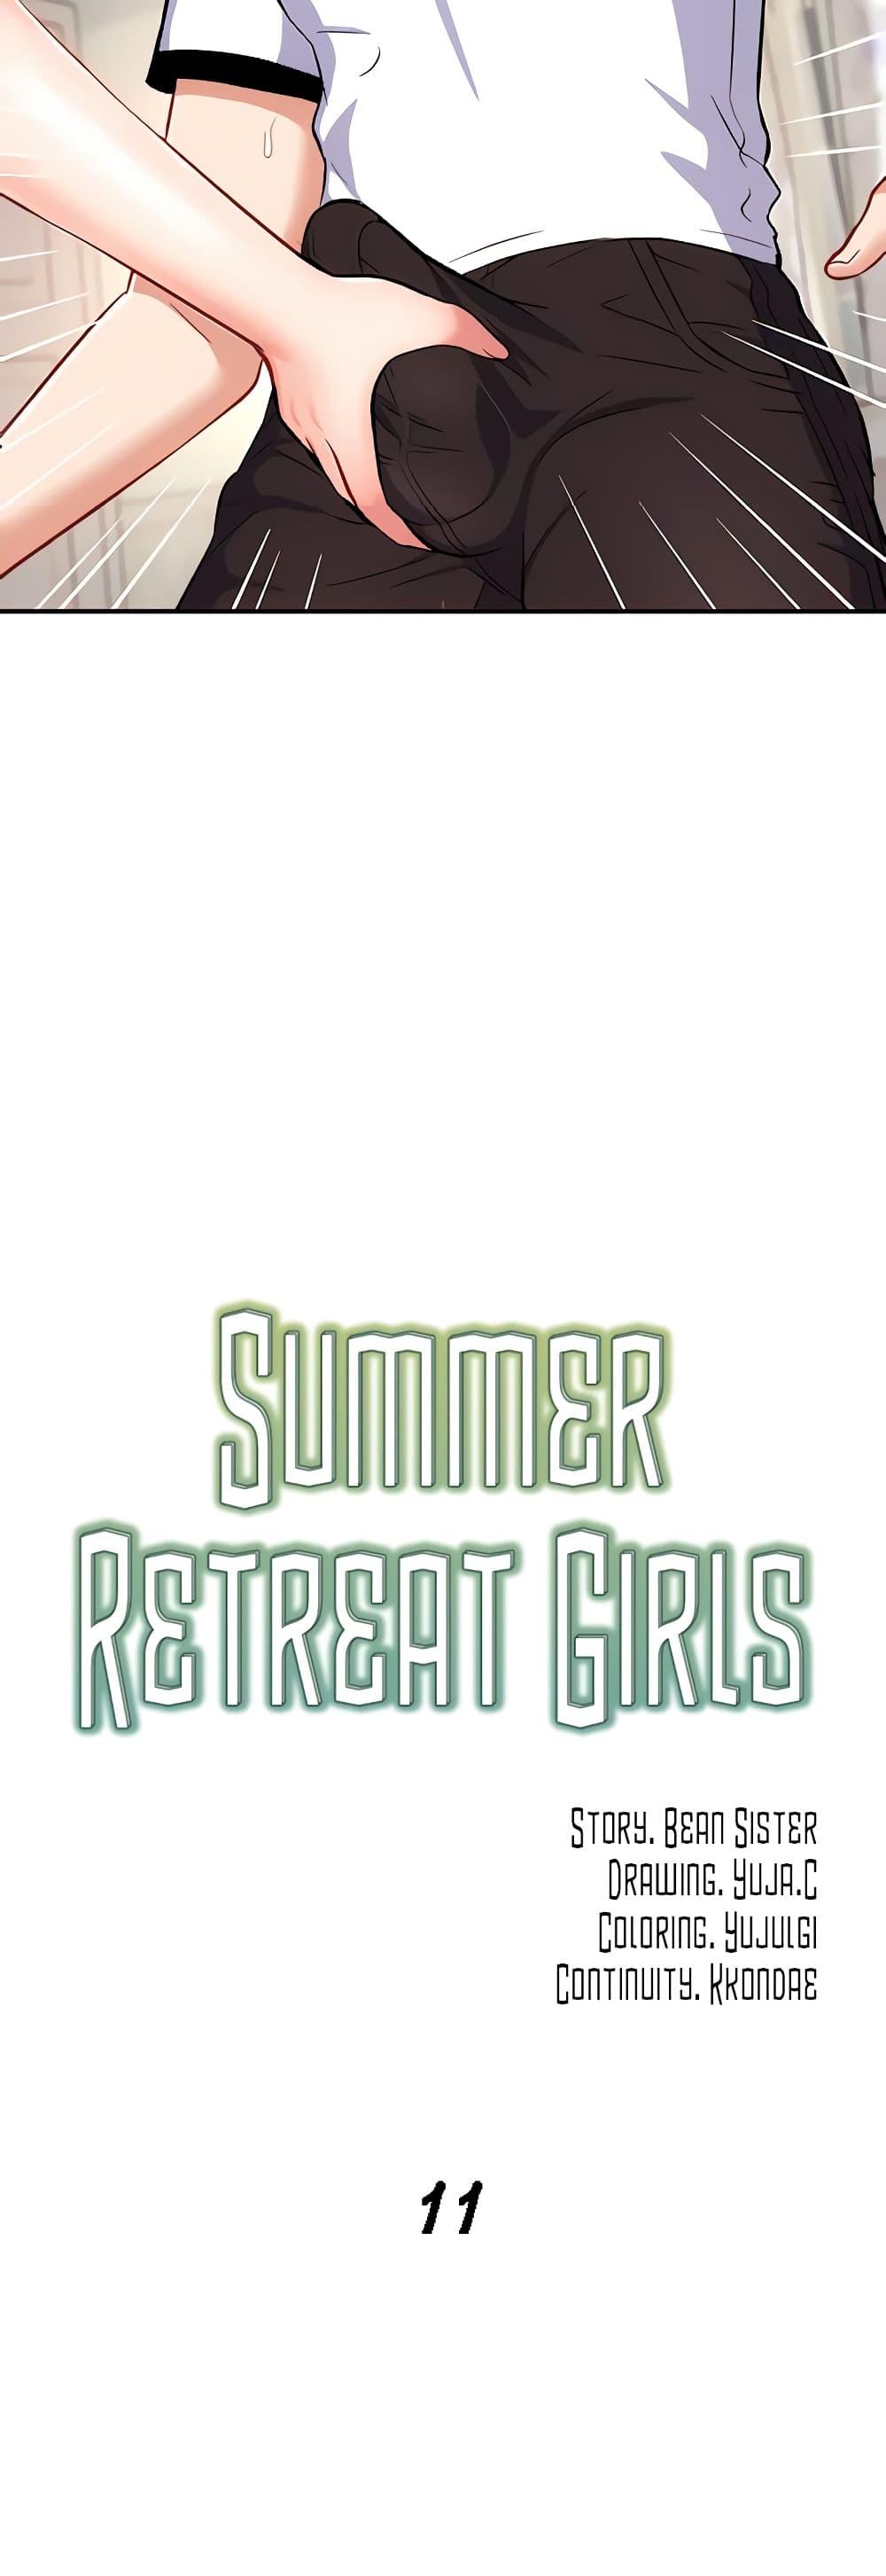 Summer Retreat Girls 11 24